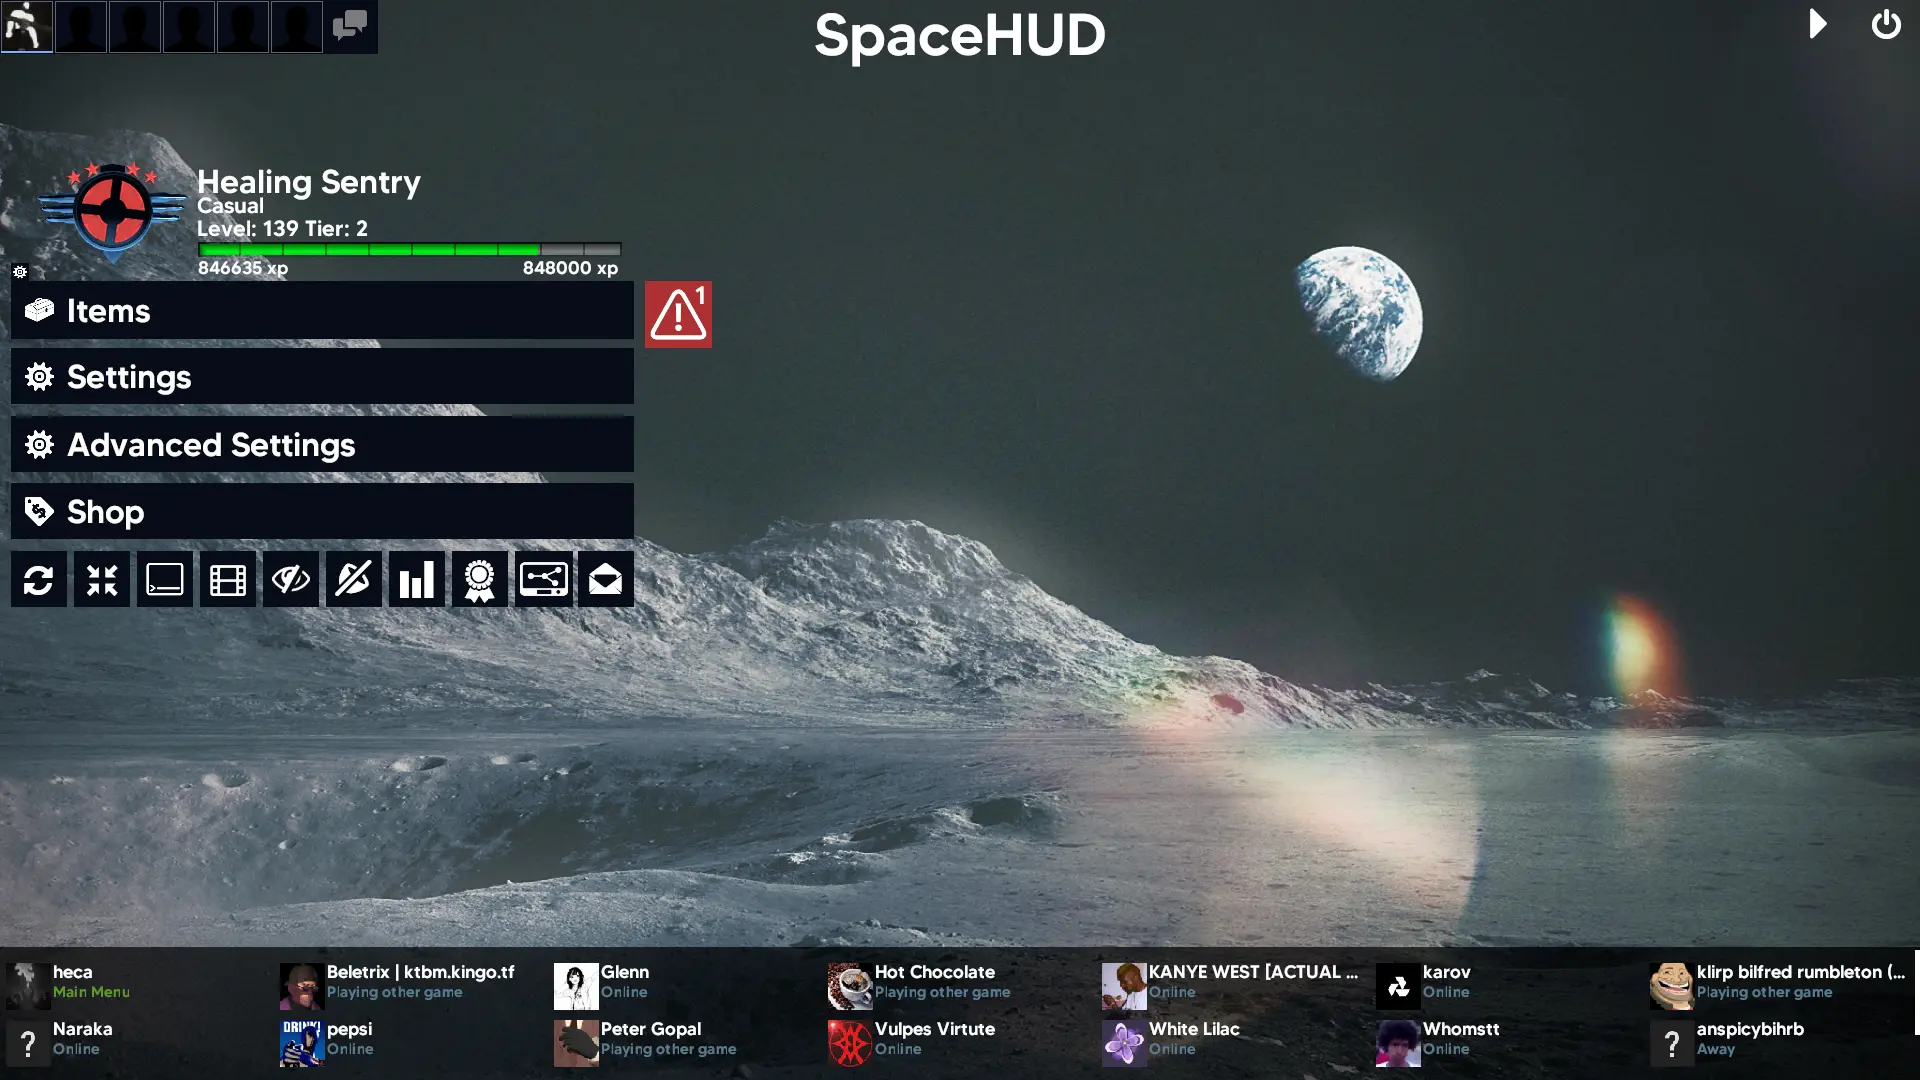 spacehud-02-menu